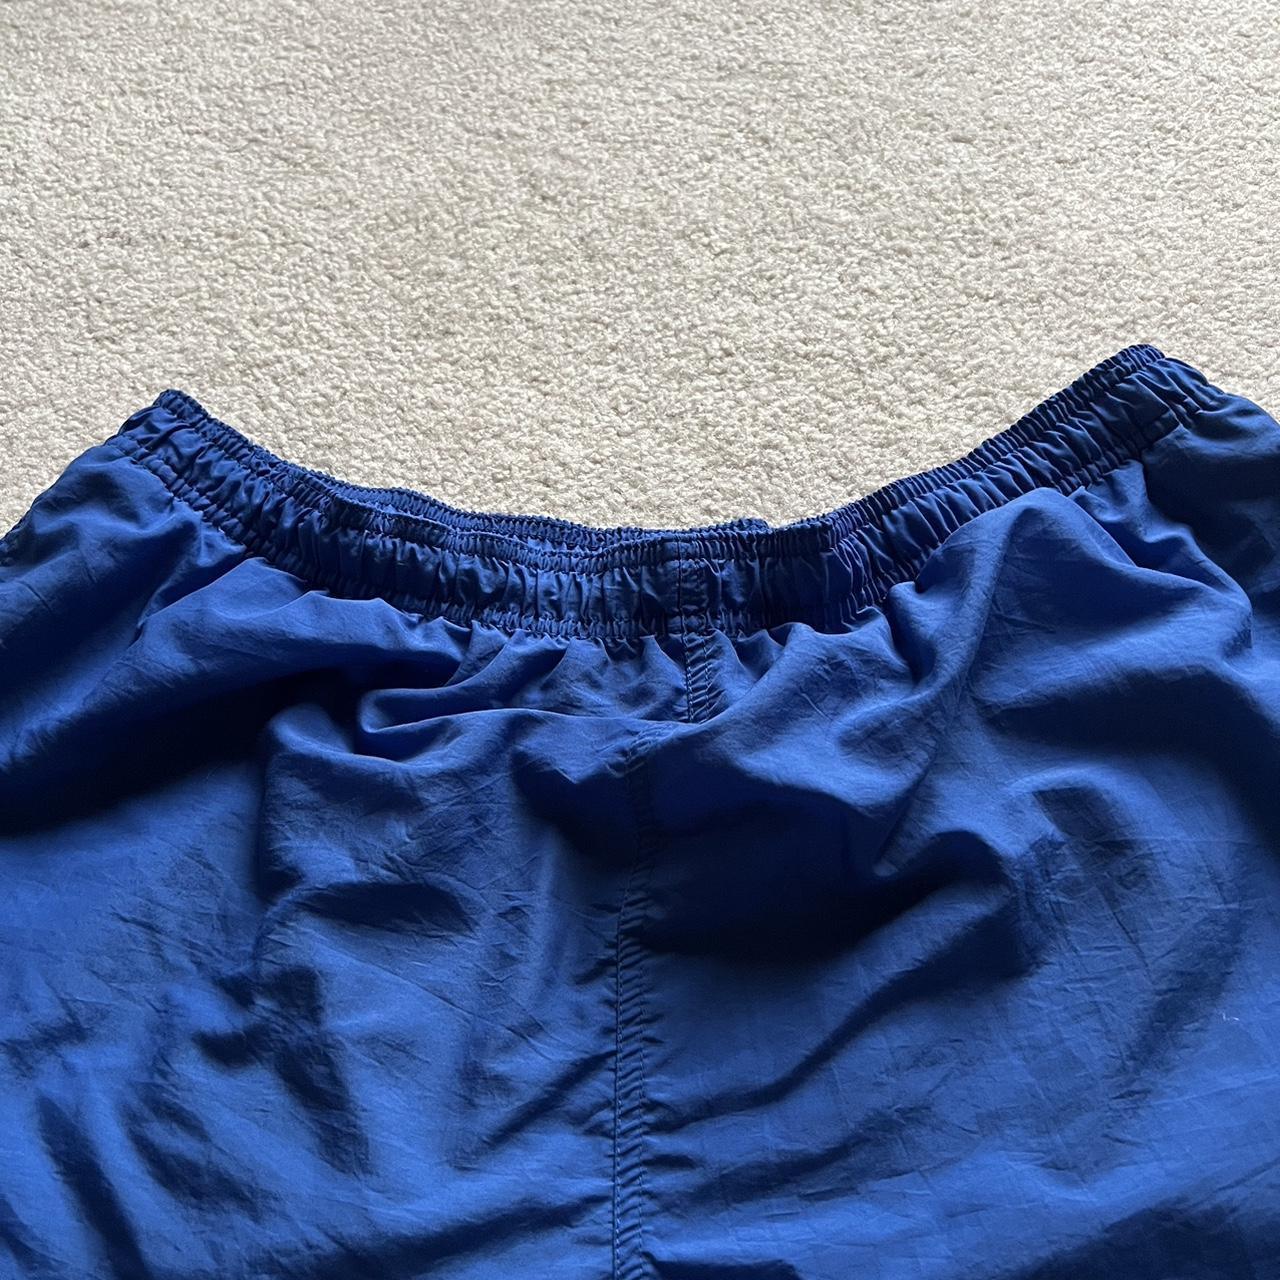 Acacia Swimwear Men's Blue and Navy Shorts (3)